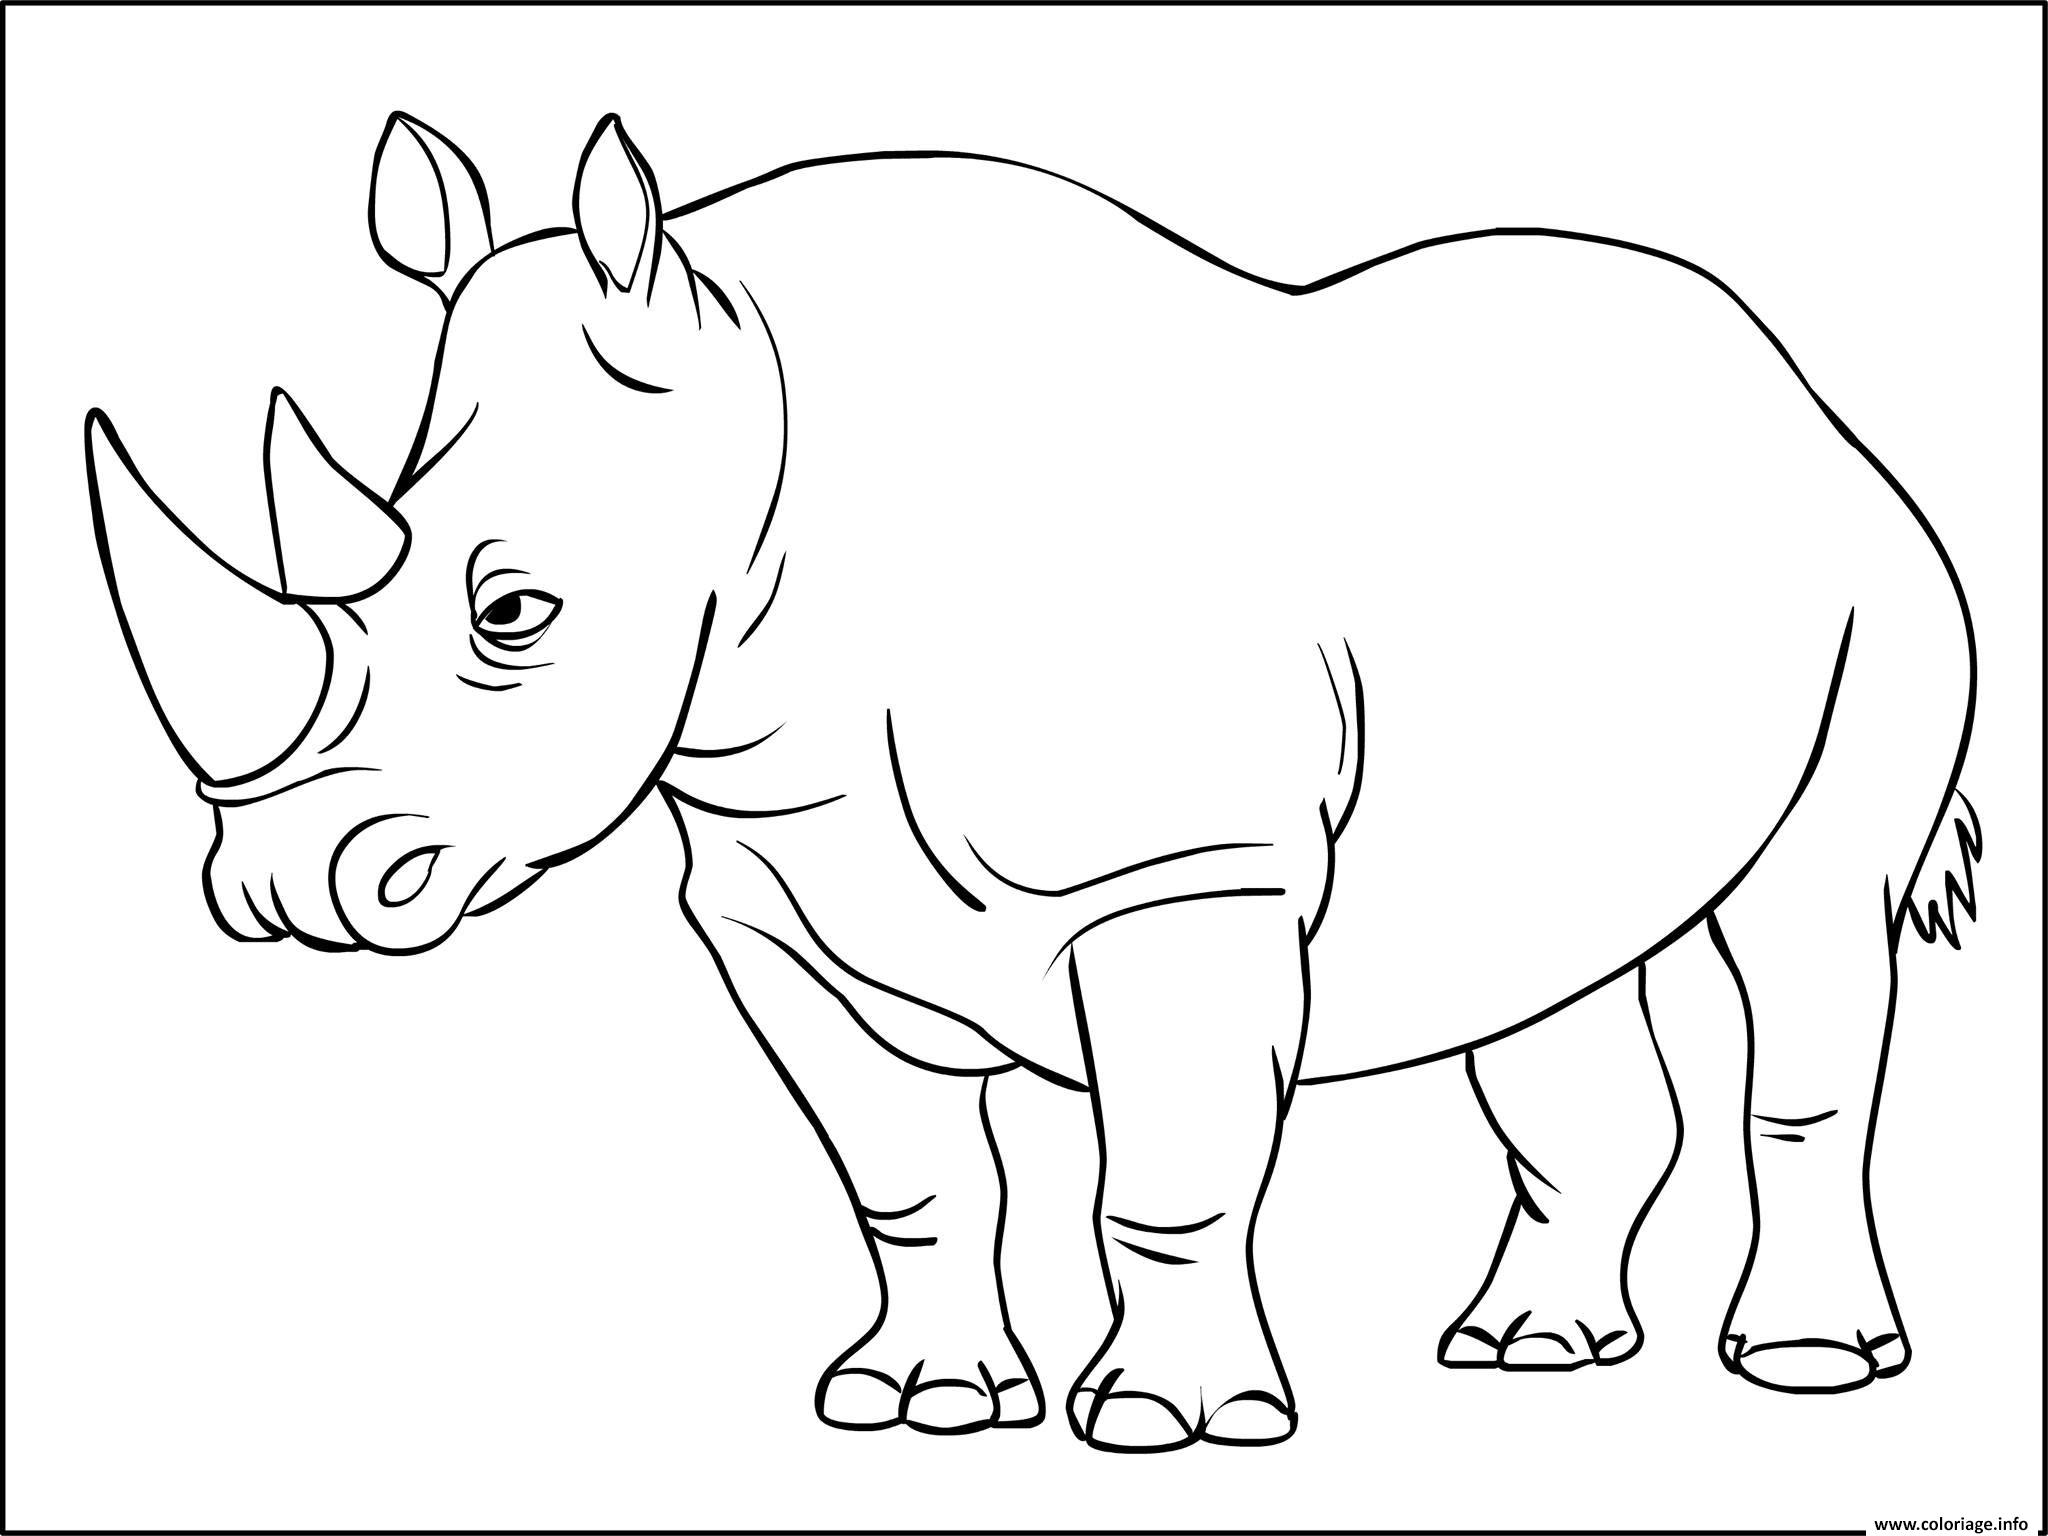 Dessin rhinoceros mammiferes appartenant a la famille des rhinocerotides Coloriage Gratuit à Imprimer